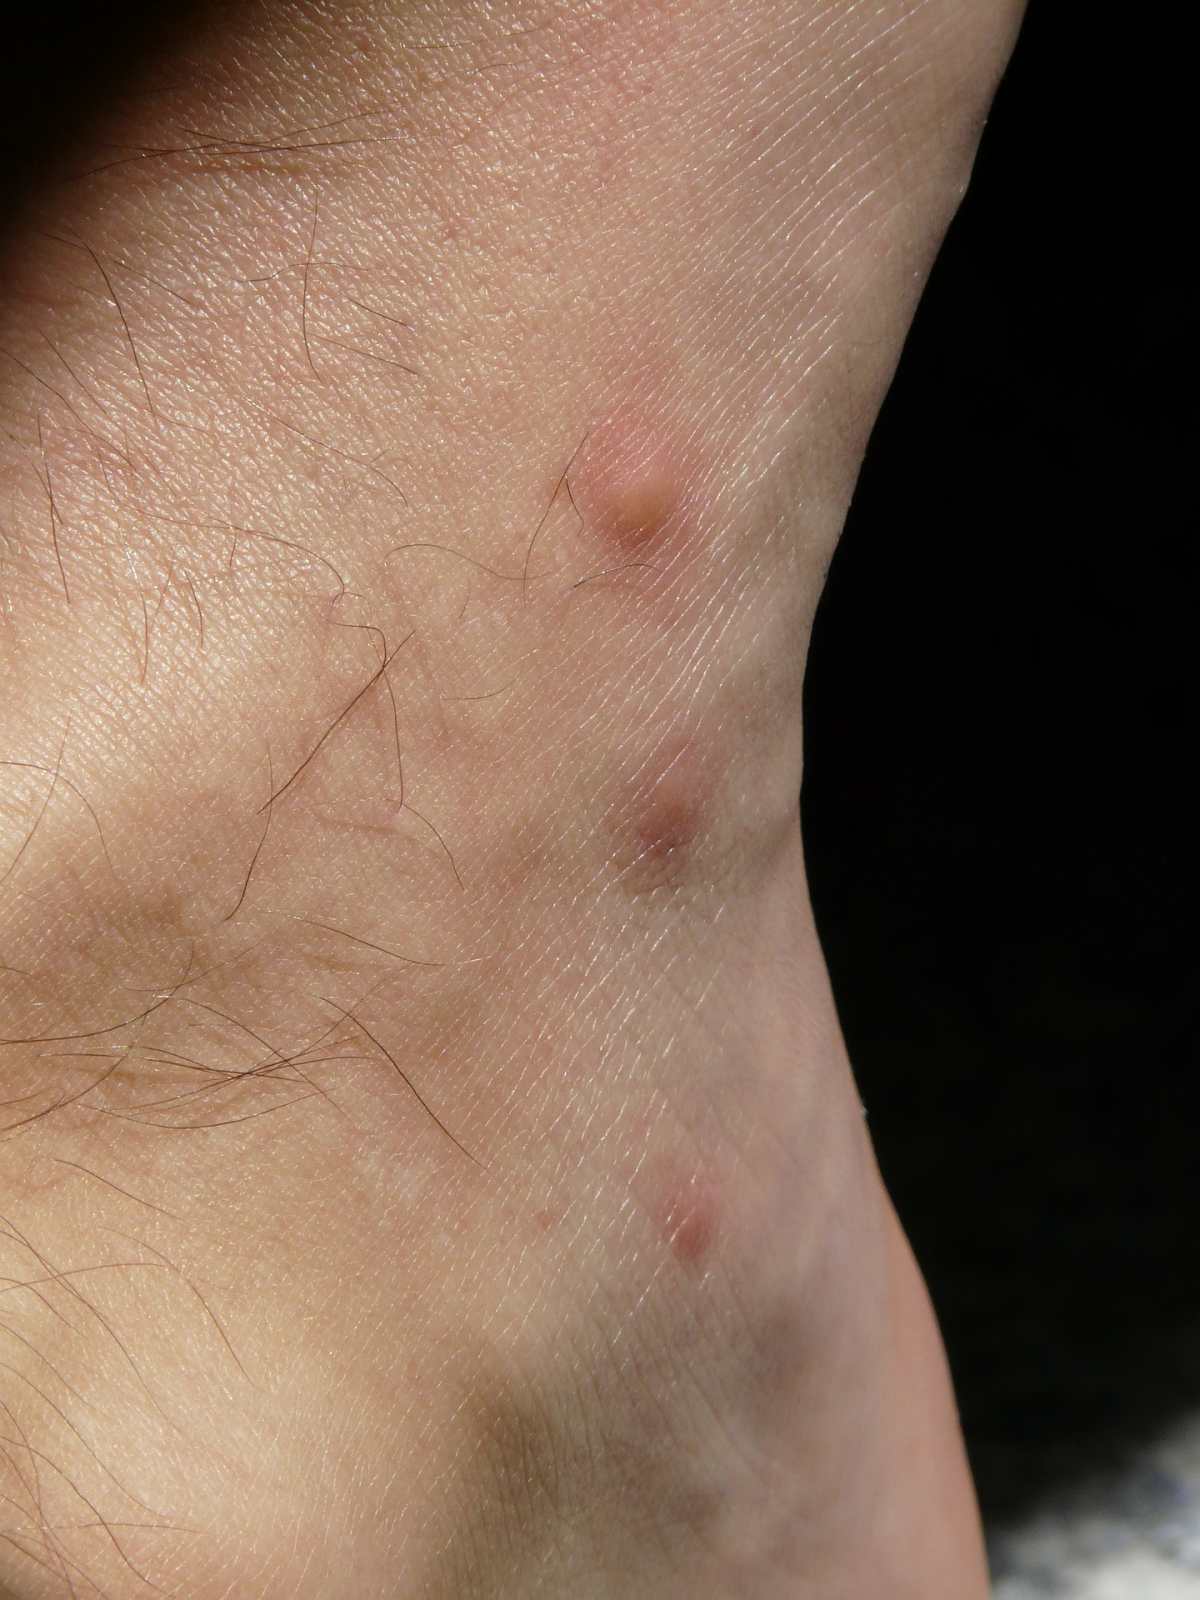 Coronavirus: ¿Las lesiones en la piel podrían ser síntomas del coronavirus?